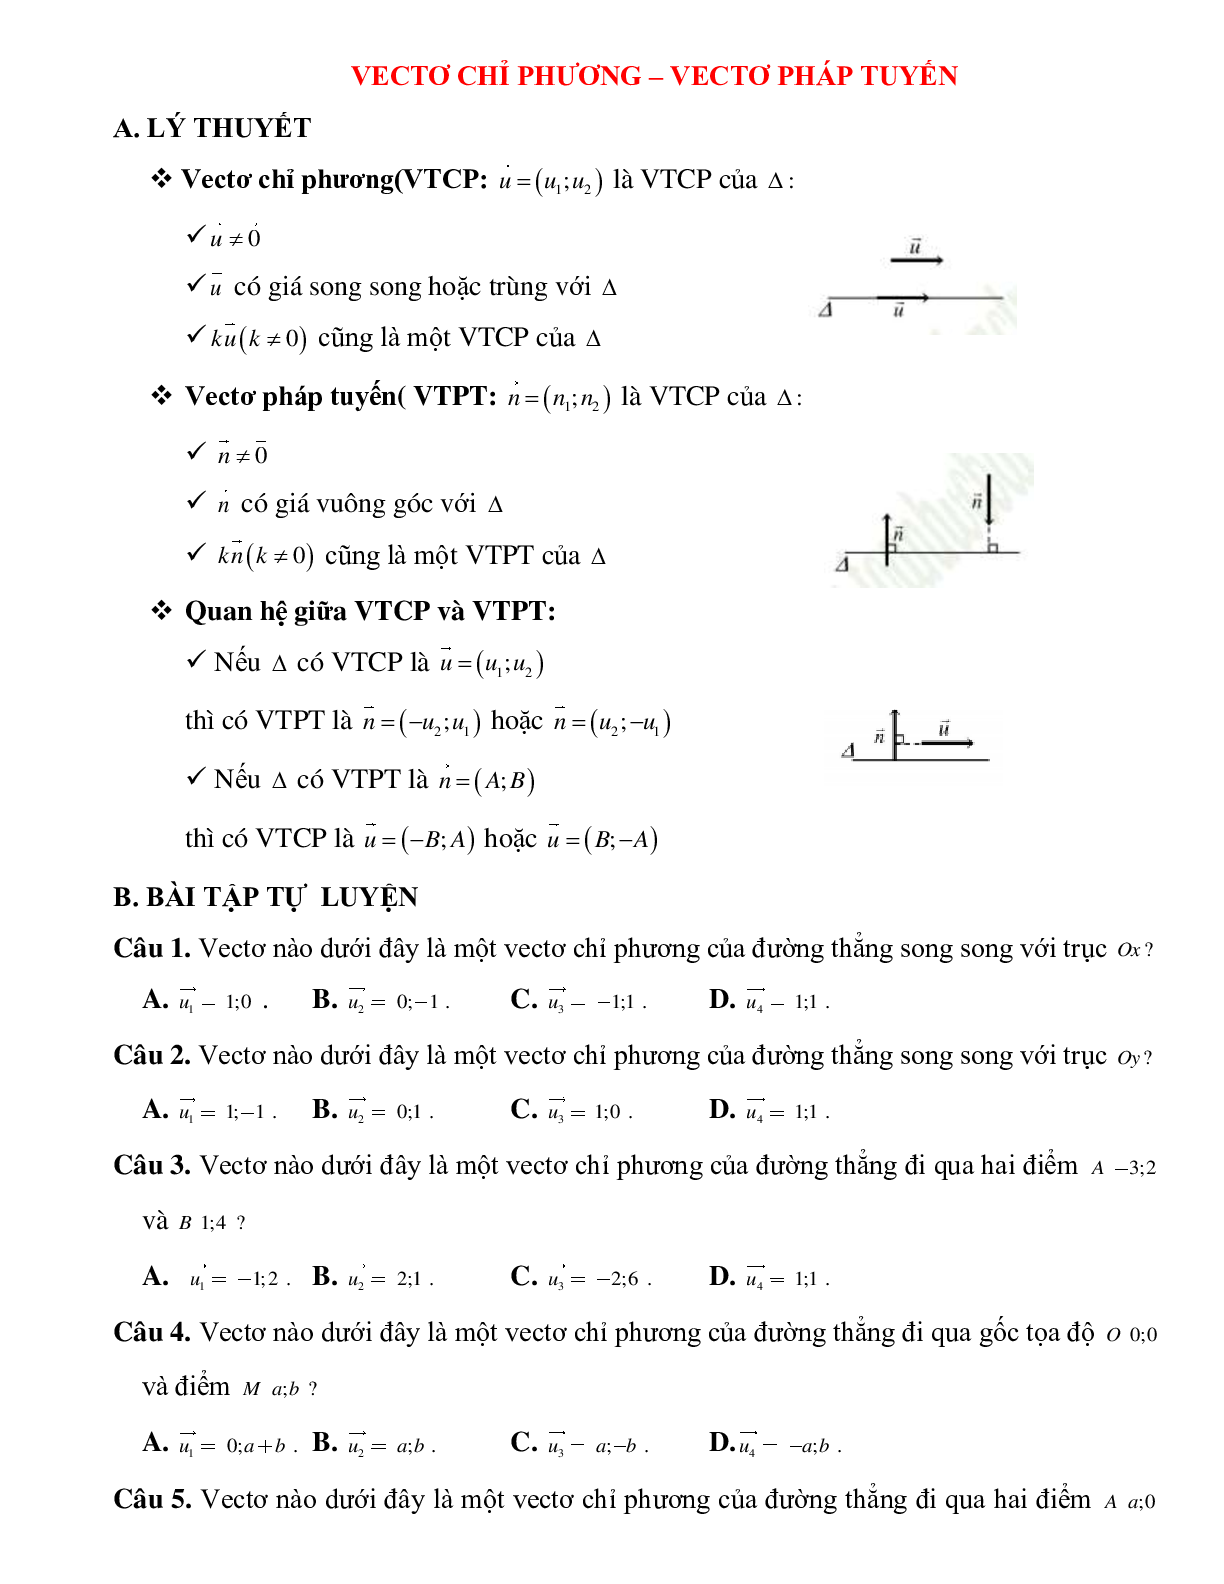 Lý thuyết, bài tập về Vectơ chỉ phương - Vectơ pháp tuyến của phương trình đường thẳng chọn lọc (trang 1)